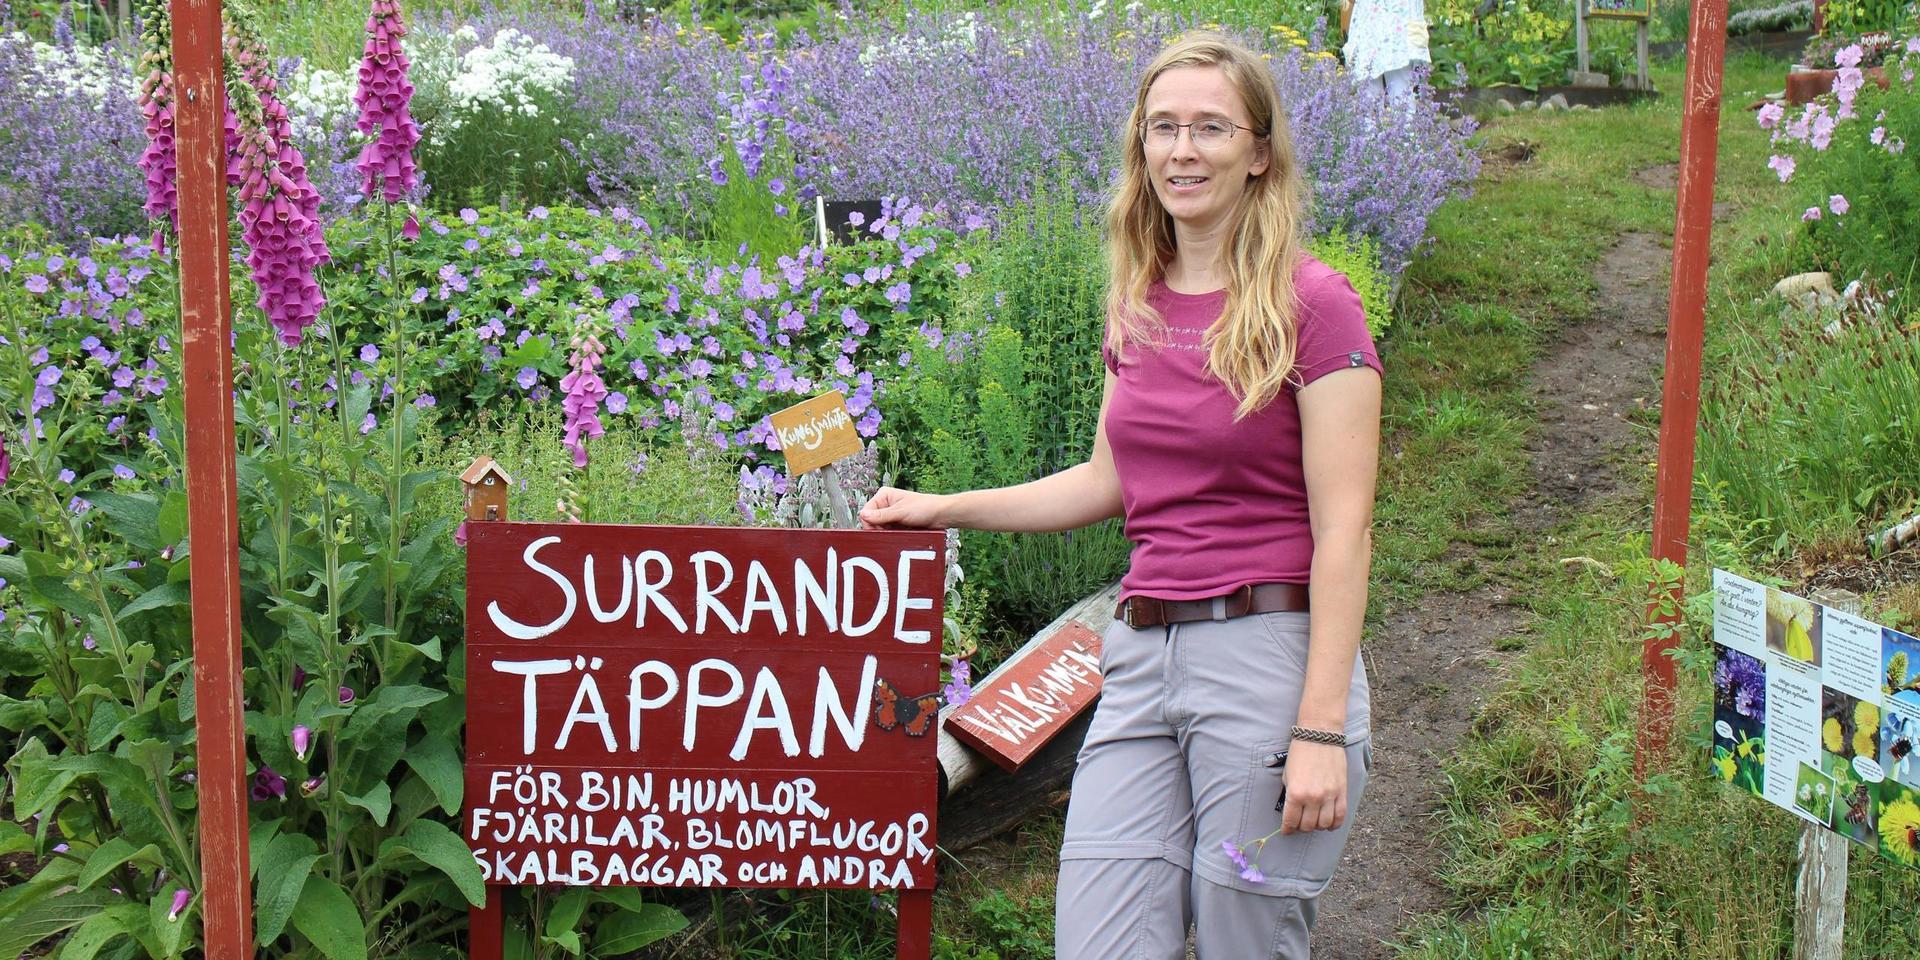 Hanna Nydeggers trädgård i Hjälteby på Tjörn är full av insekter. &quot;Många barn har aldrig hållit en fjäril eller skalbagge i handen tidigare och tycker det här är väldigt spännande&quot;, säger hon.